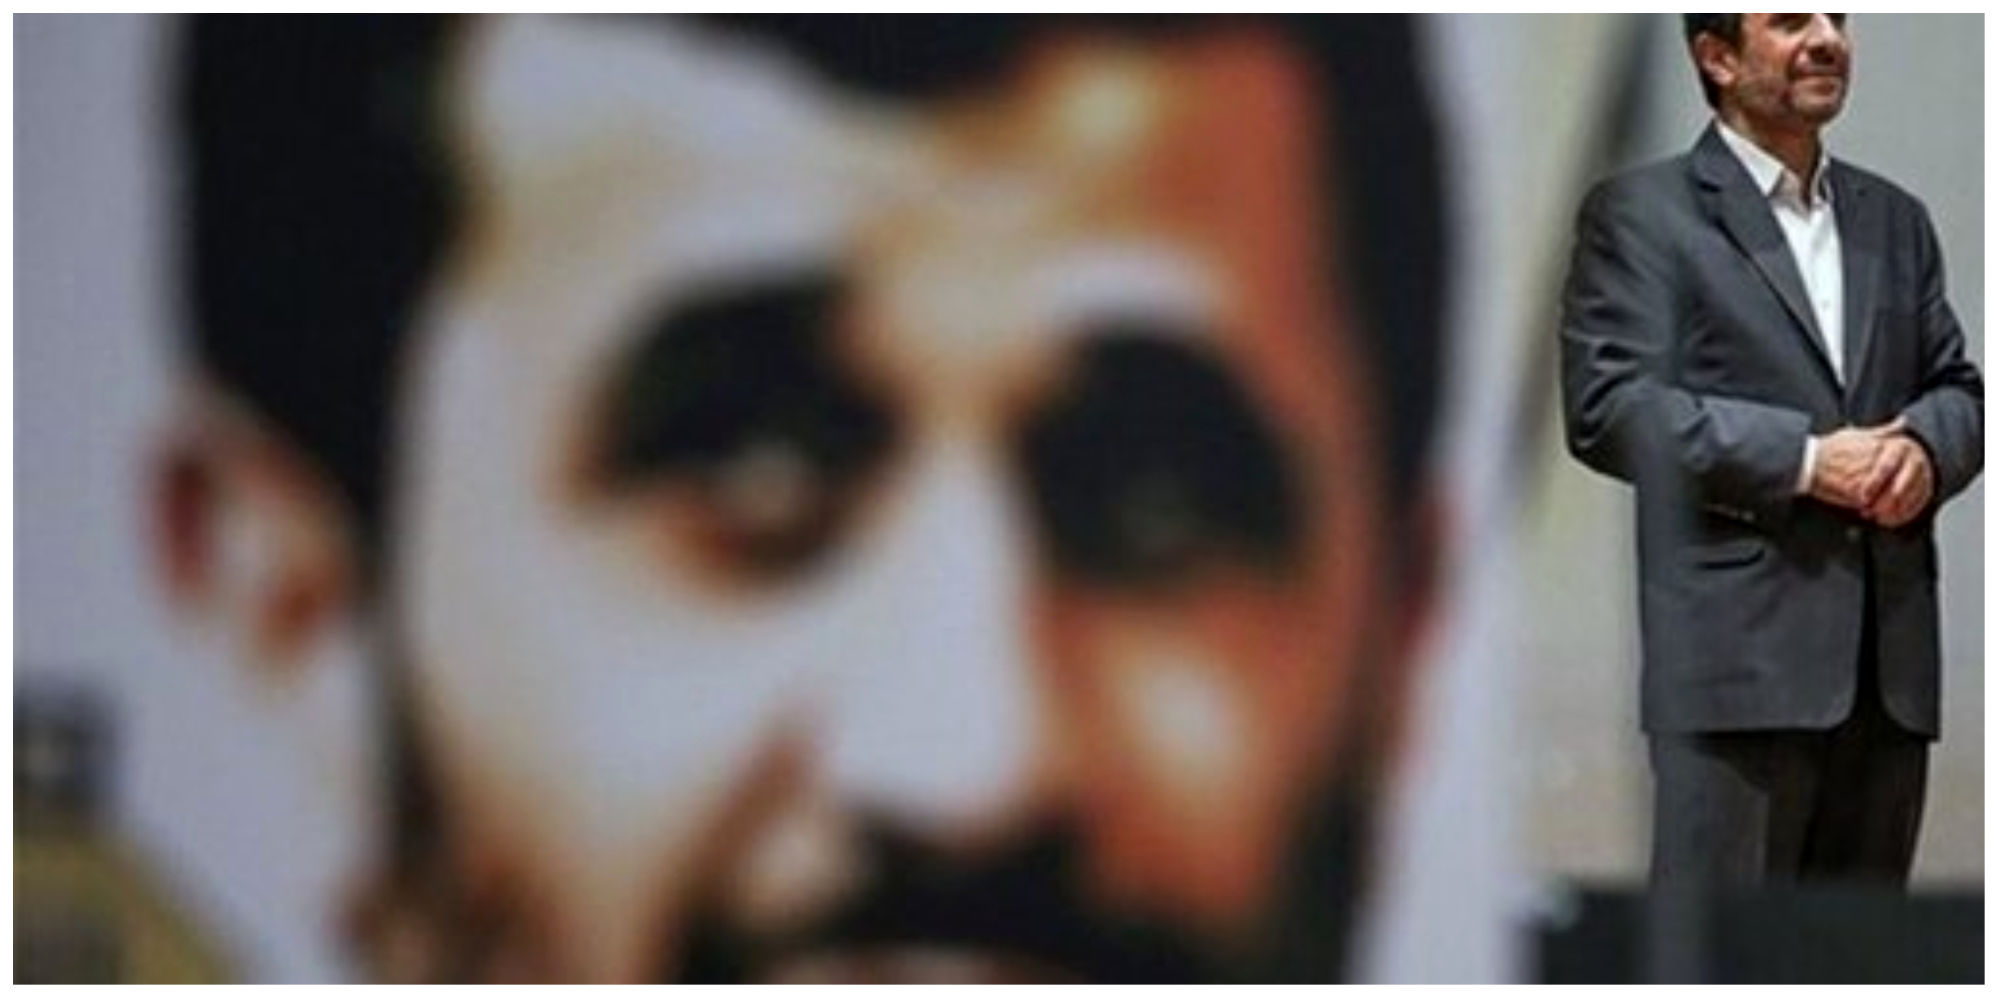 احمدی‌نژاد مریض بود؛ پایان سکوت 7 ماهه؟